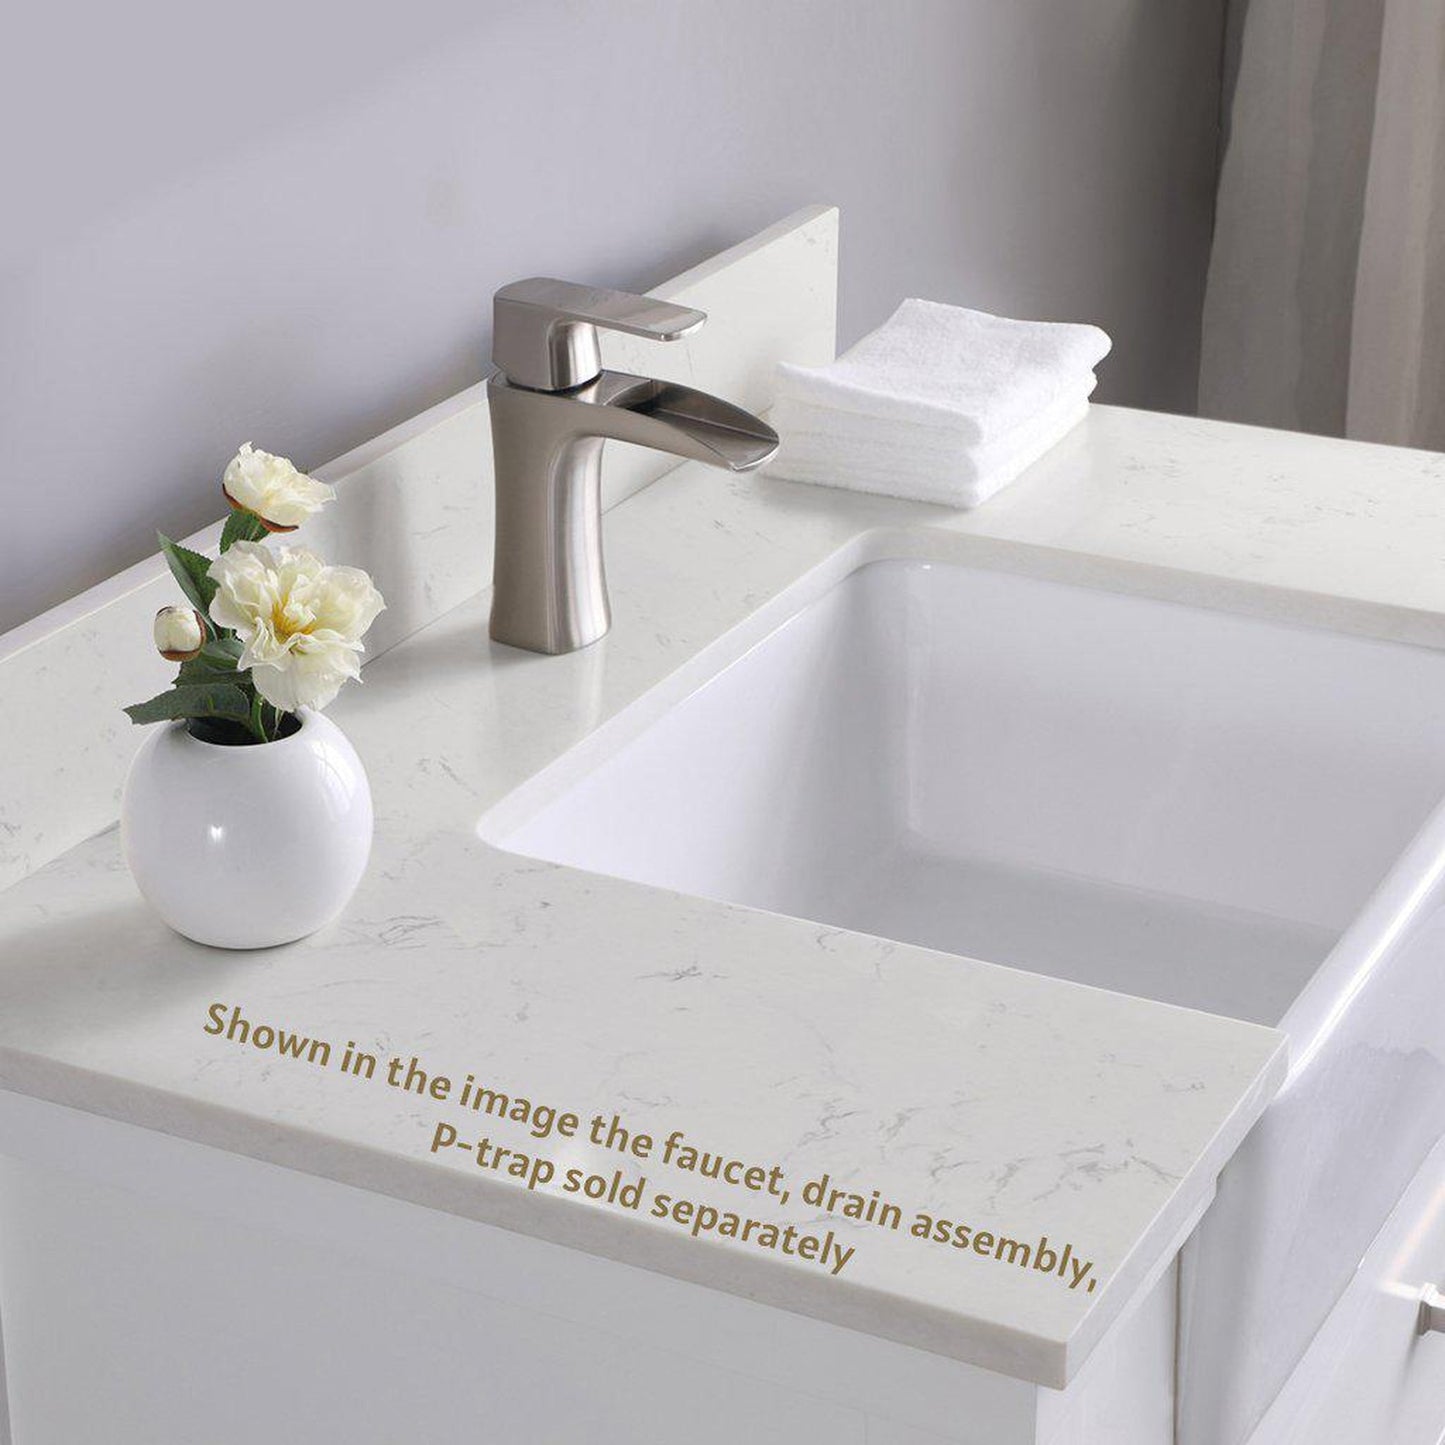 Altair Georgia 36" Single White Freestanding Bathroom Vanity Set With Aosta White Composite Stone Top, Rectangular Farmhouse Sink, Overflow, and Backsplash